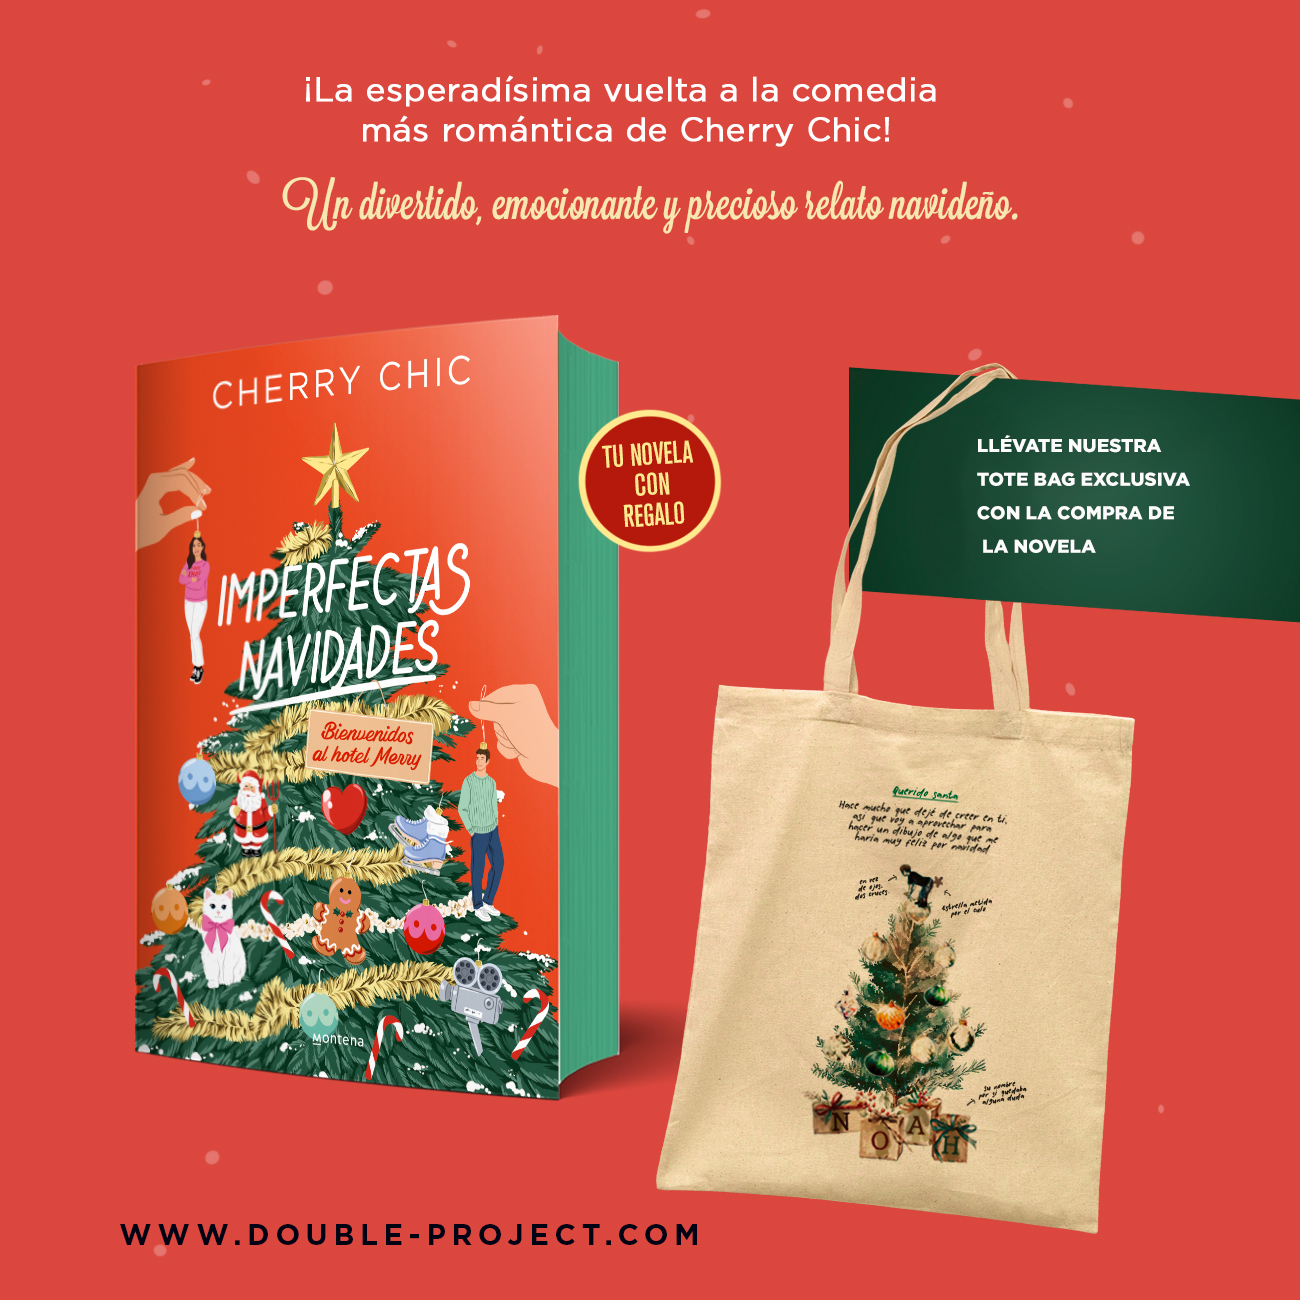 Imperfectas navidades: Bienvenidos al hotel Merry (Montena) : Cherry Chic:  : Libros